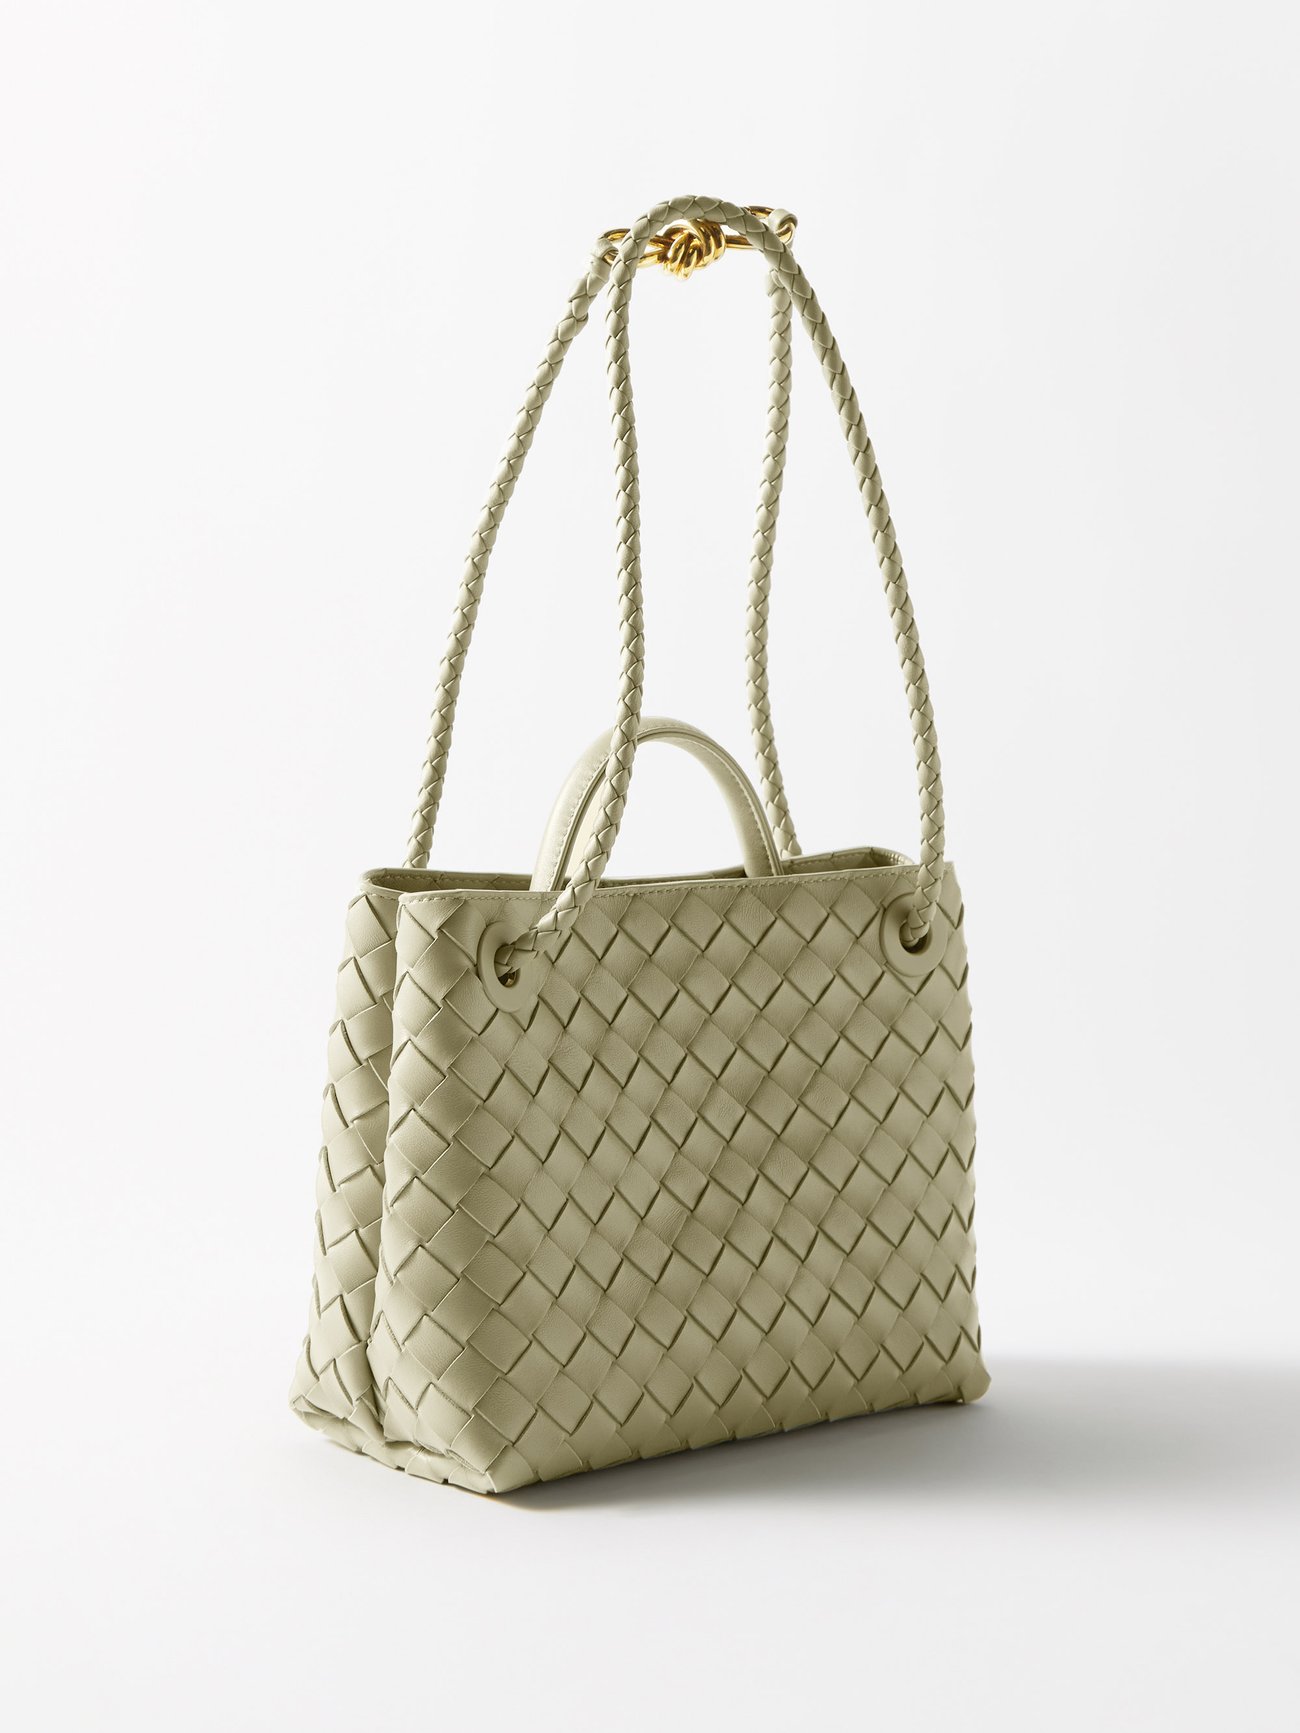 Beige Andiamo small Intrecciato-leather handbag, Bottega Veneta